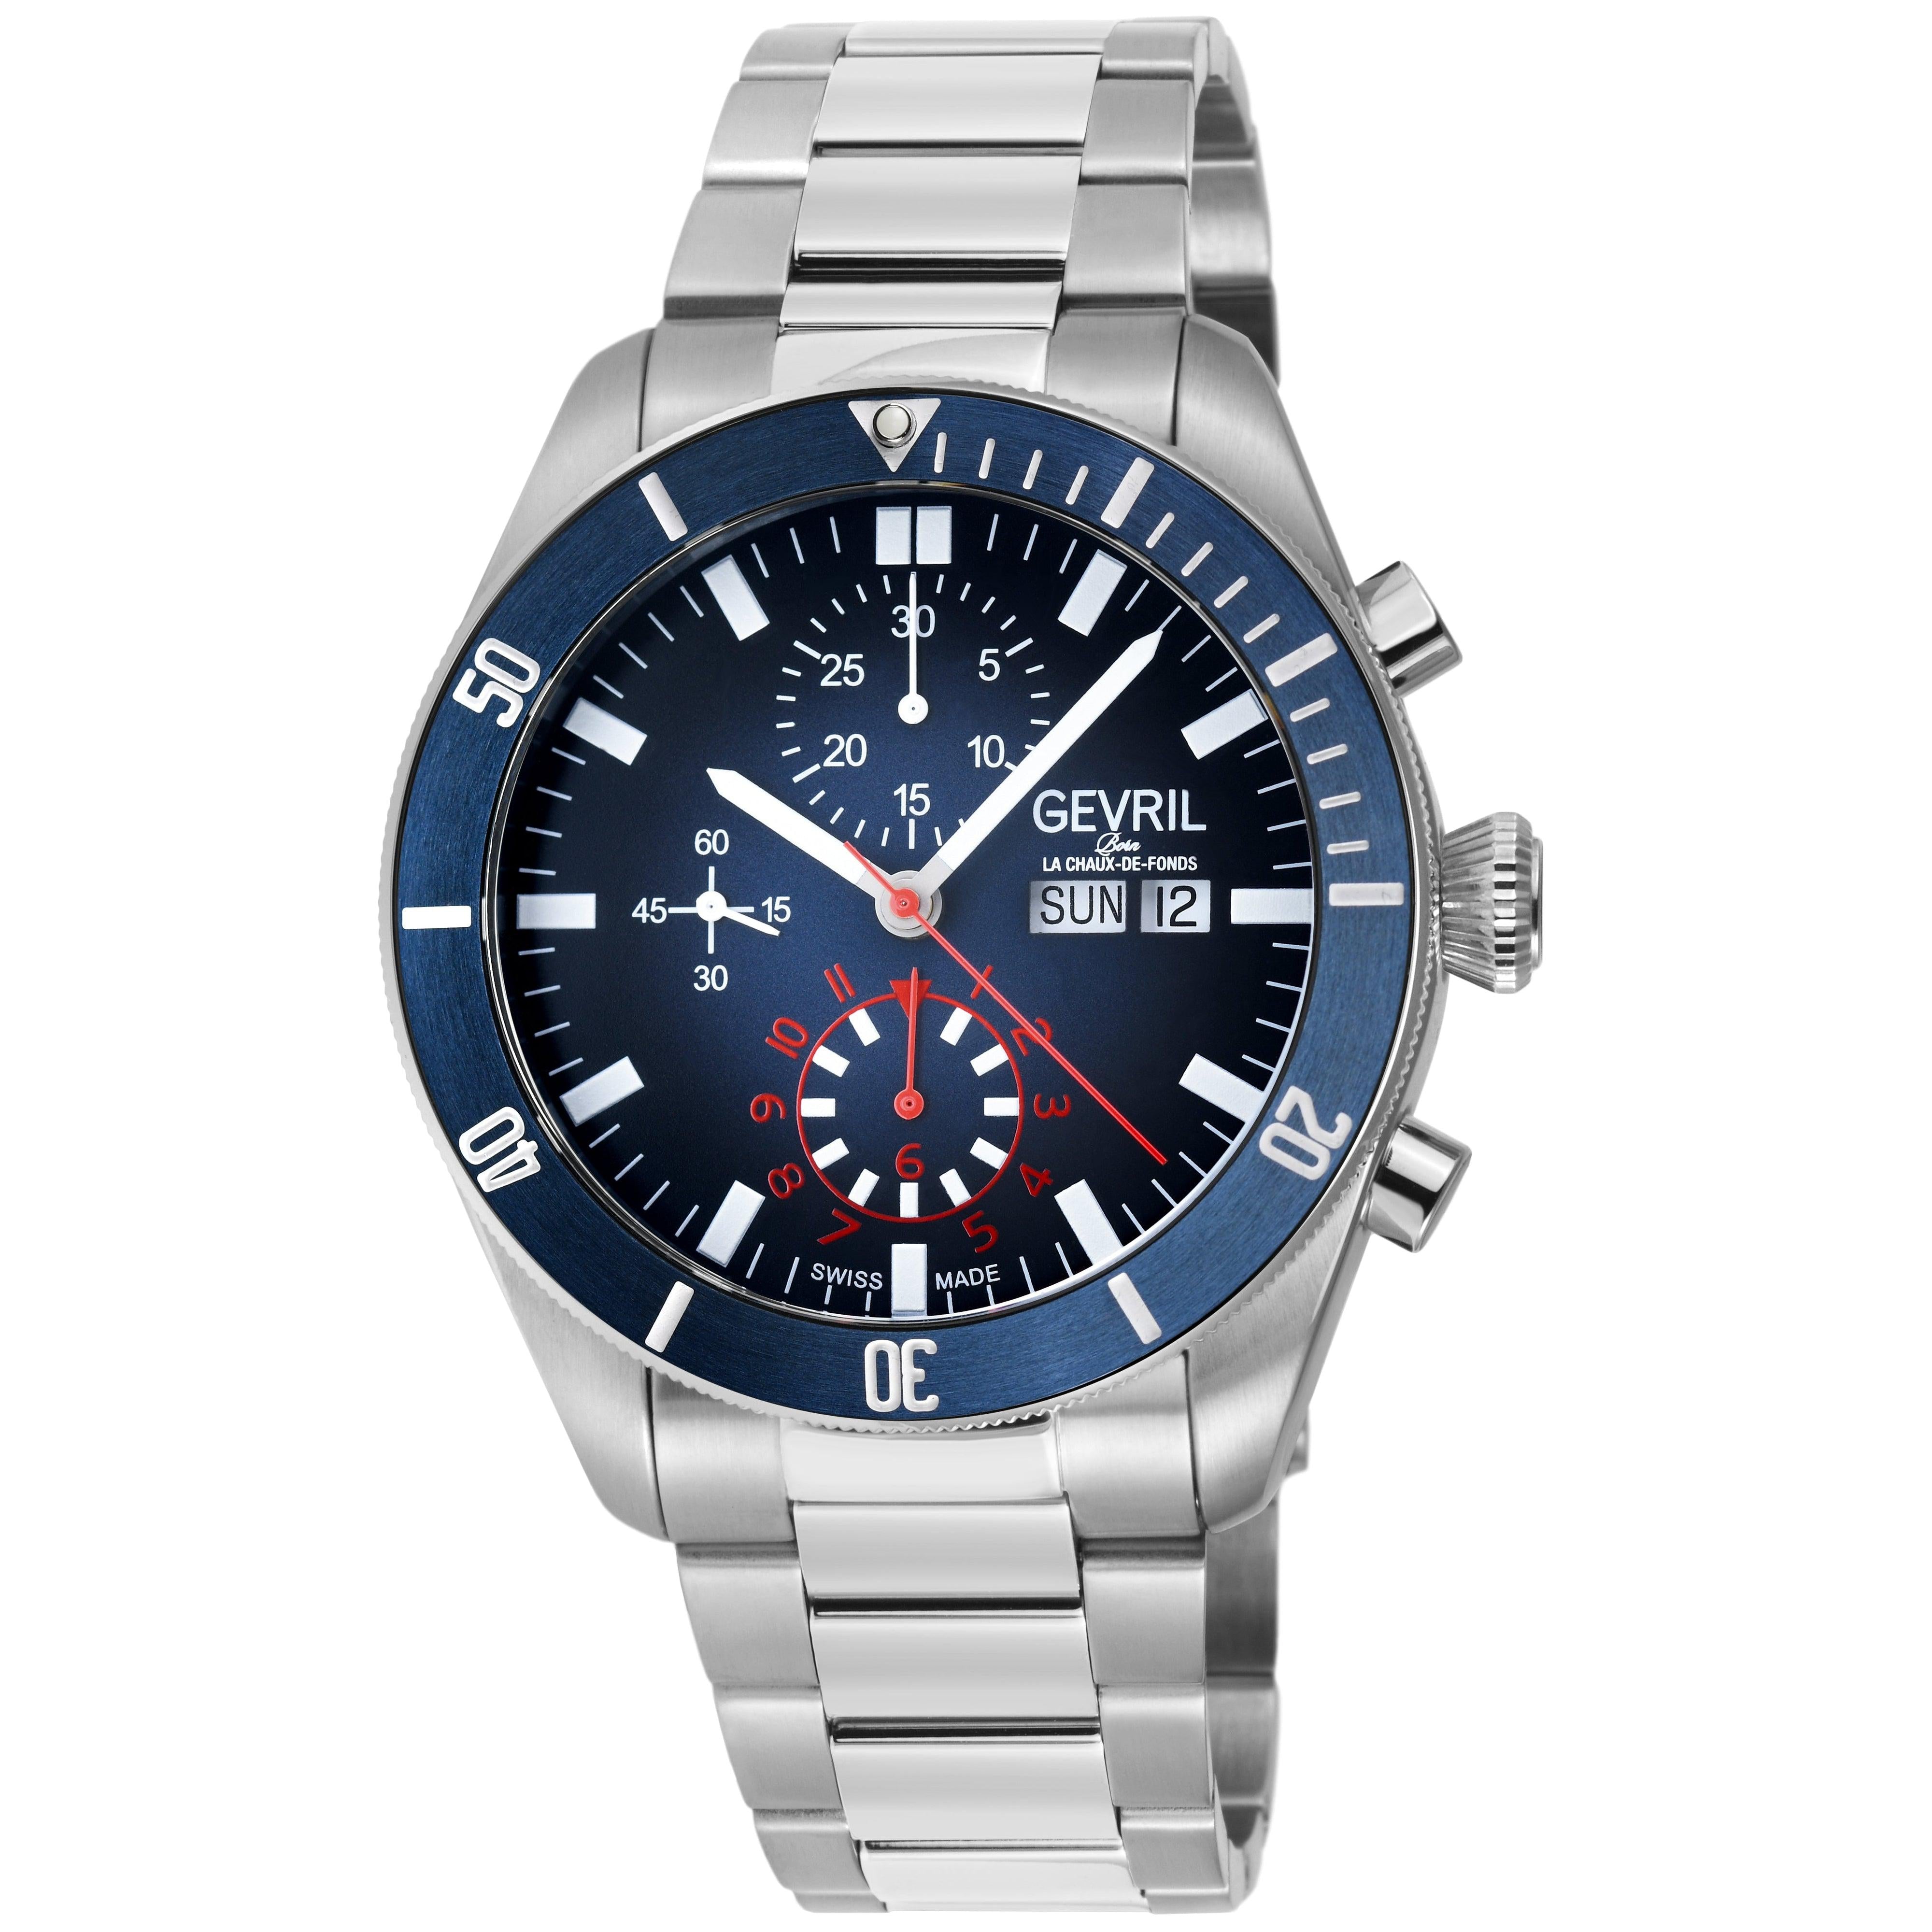 GEVRIL WATCH Born La Chaux-De-Fonds | Rolex watches, Watches, Accessories